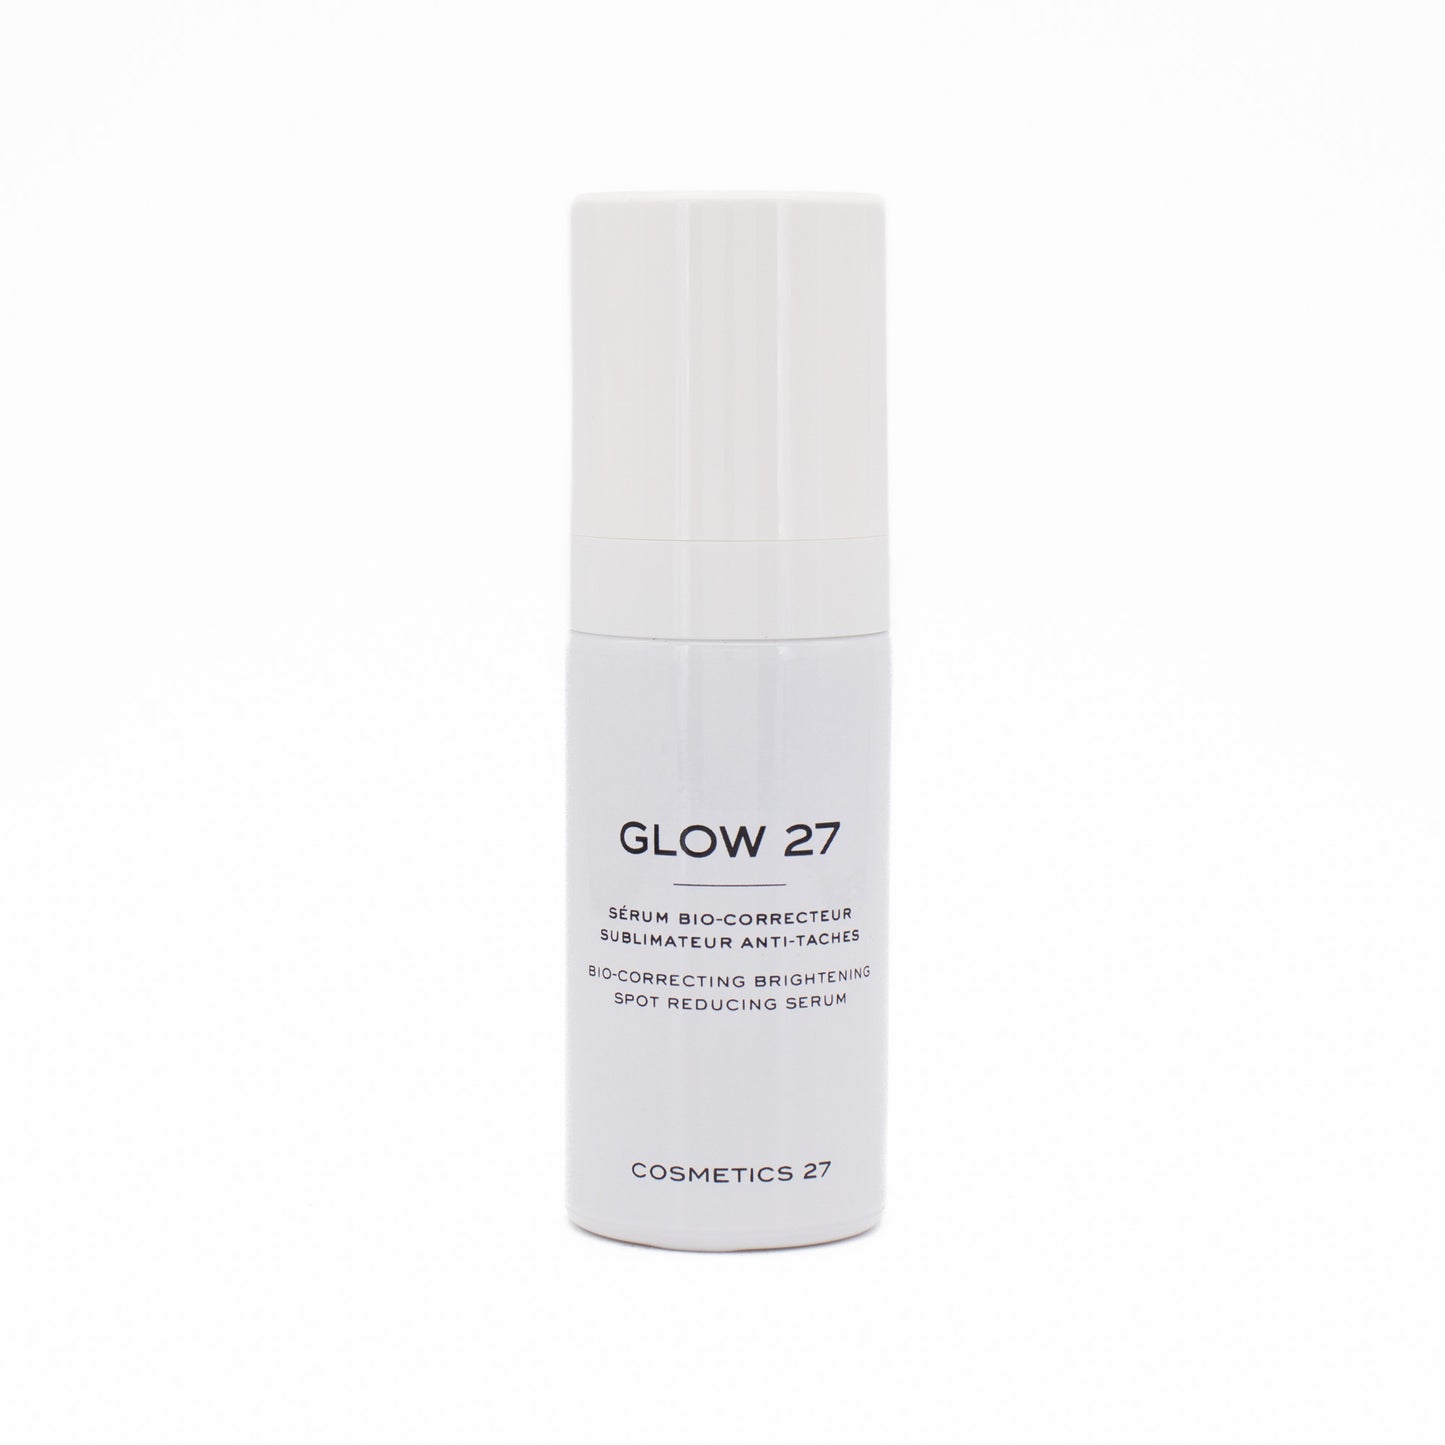 Cosmetics 27 Glow 27 Bio-Correcting Brightening Serum 30ml - Imperfect Box